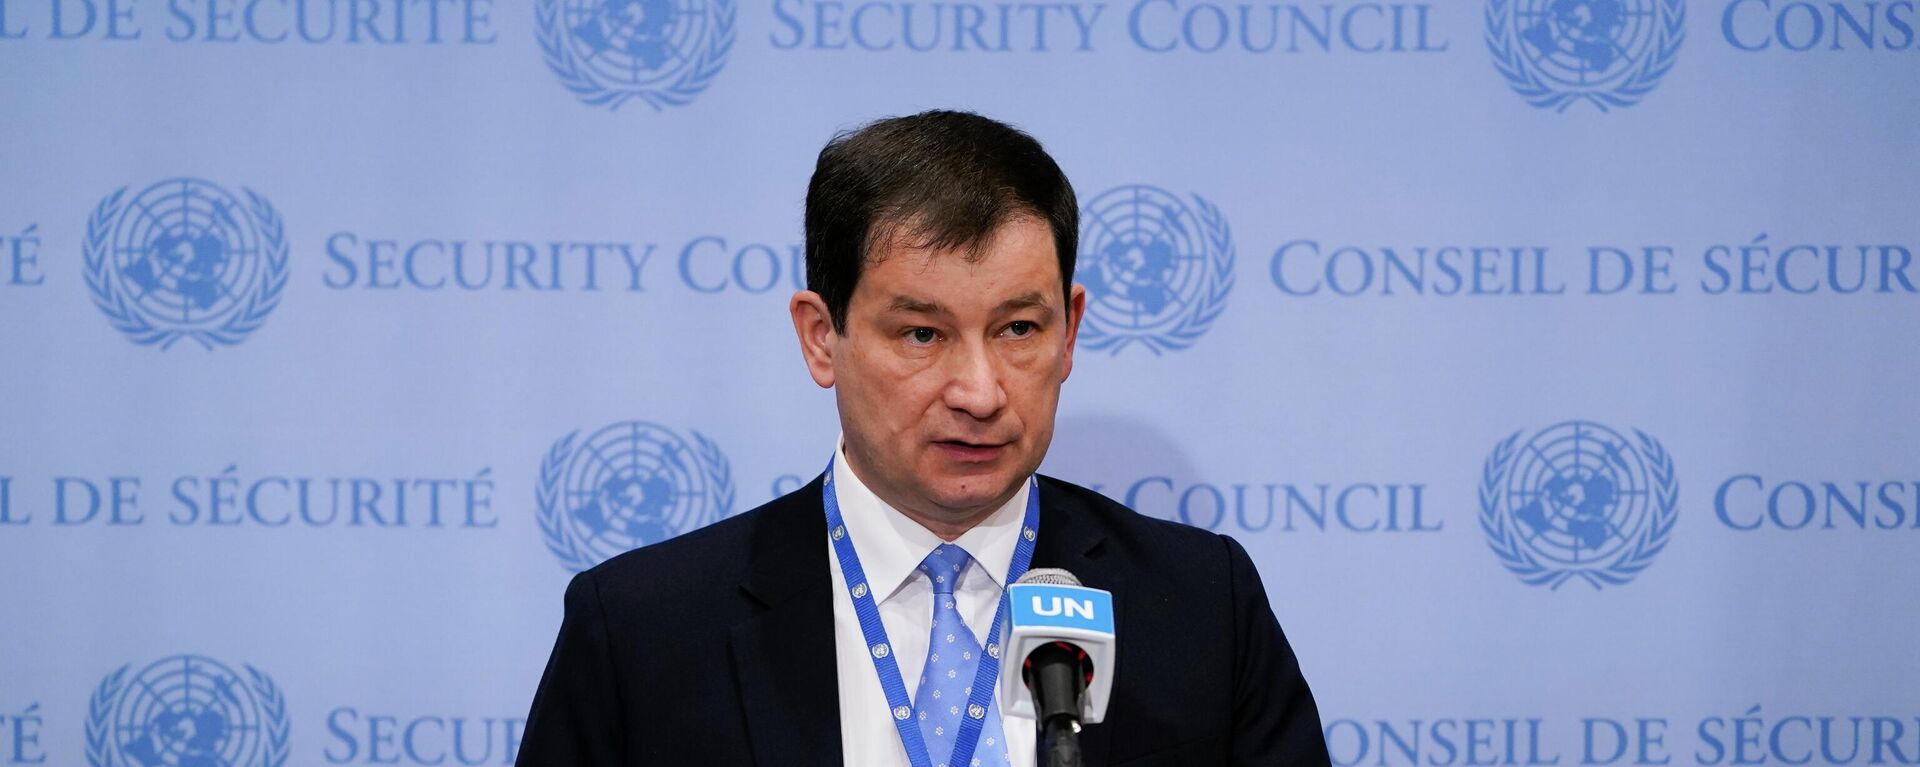 Vice-chanceler russo na Organização das Nações Unidas (ONU), Dmitry Polyanskiy fala a jornalistas na organização, em 19 de abril de 2022 - Sputnik Brasil, 1920, 14.09.2022